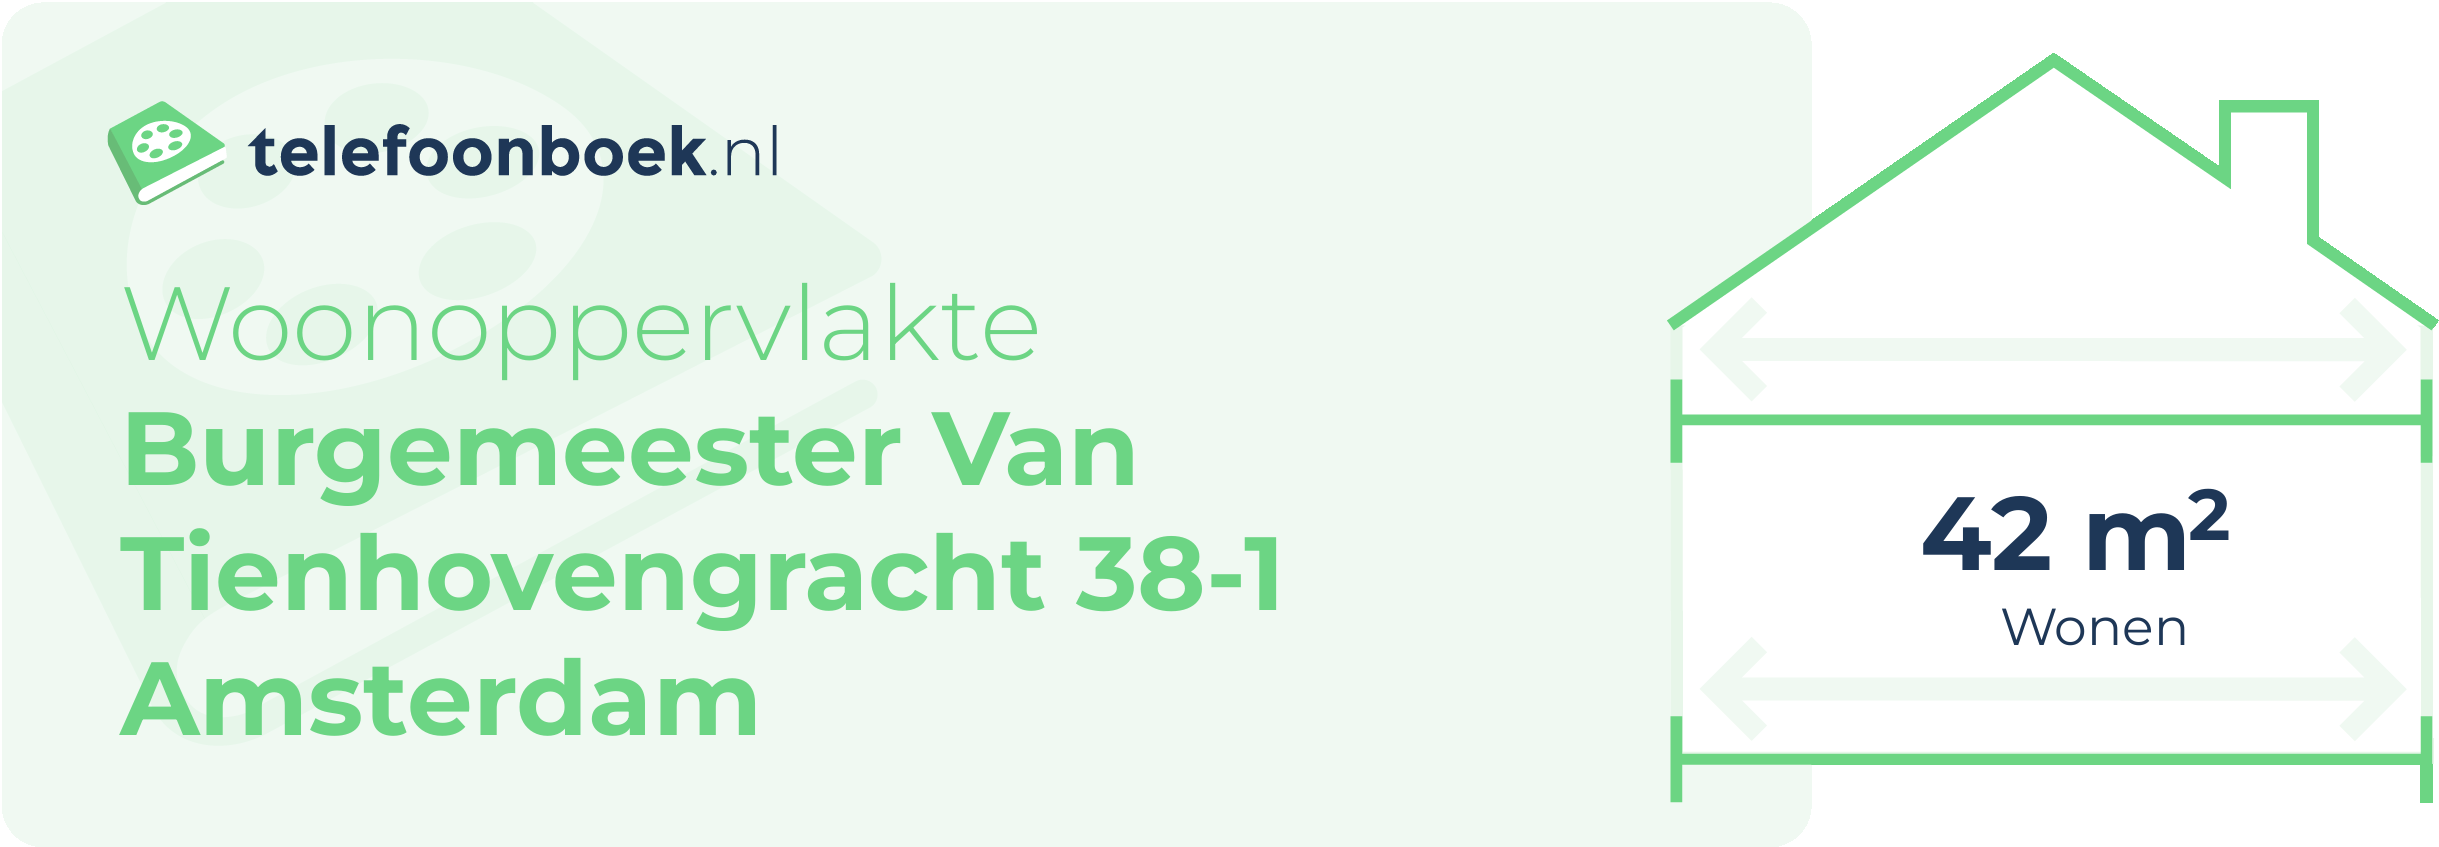 Woonoppervlakte Burgemeester Van Tienhovengracht 38-1 Amsterdam